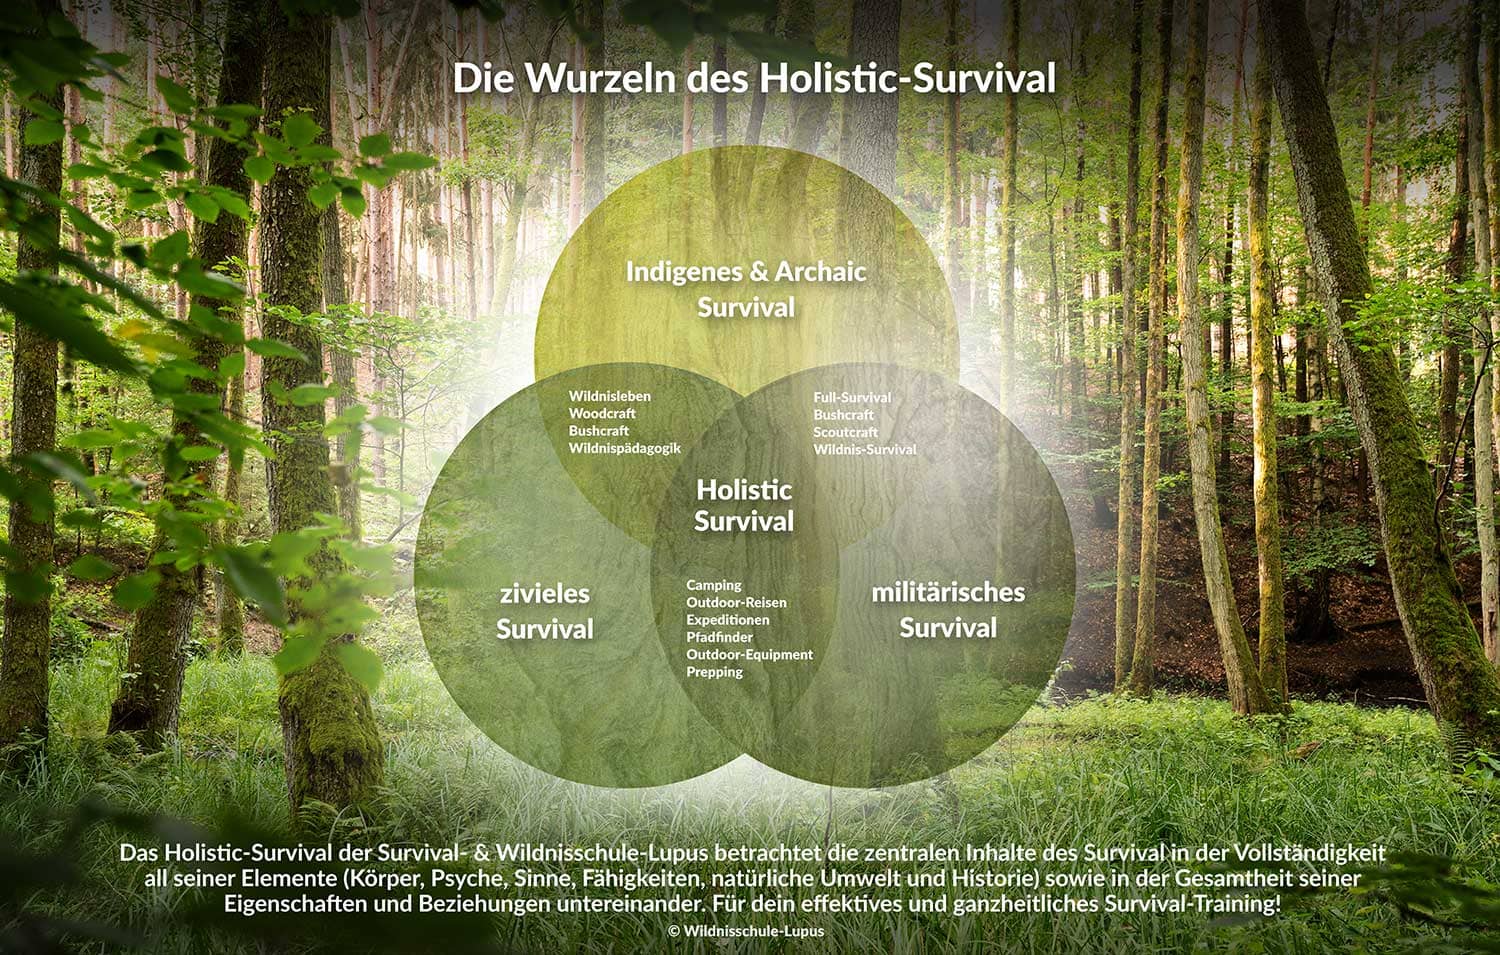 Die Grafik zeigt die historische Wurzel unseres heutigen modernen Holistic-Survival-Training. Das indigene Survival, das zivile Survival und das militärischen Survival.